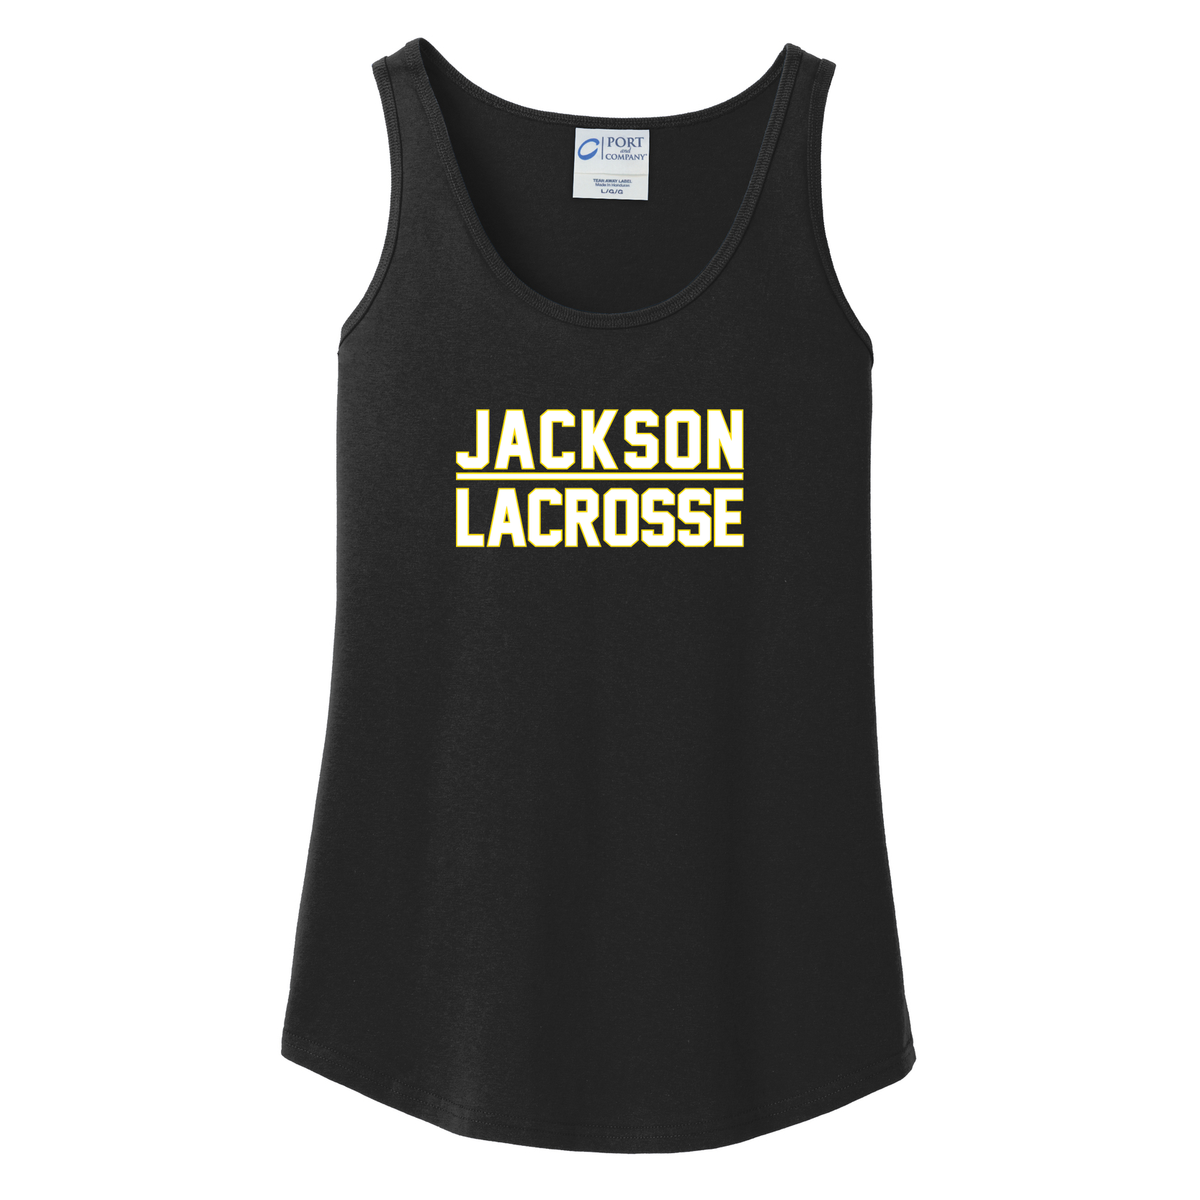 Jackson Lacrosse Women's Tank Top